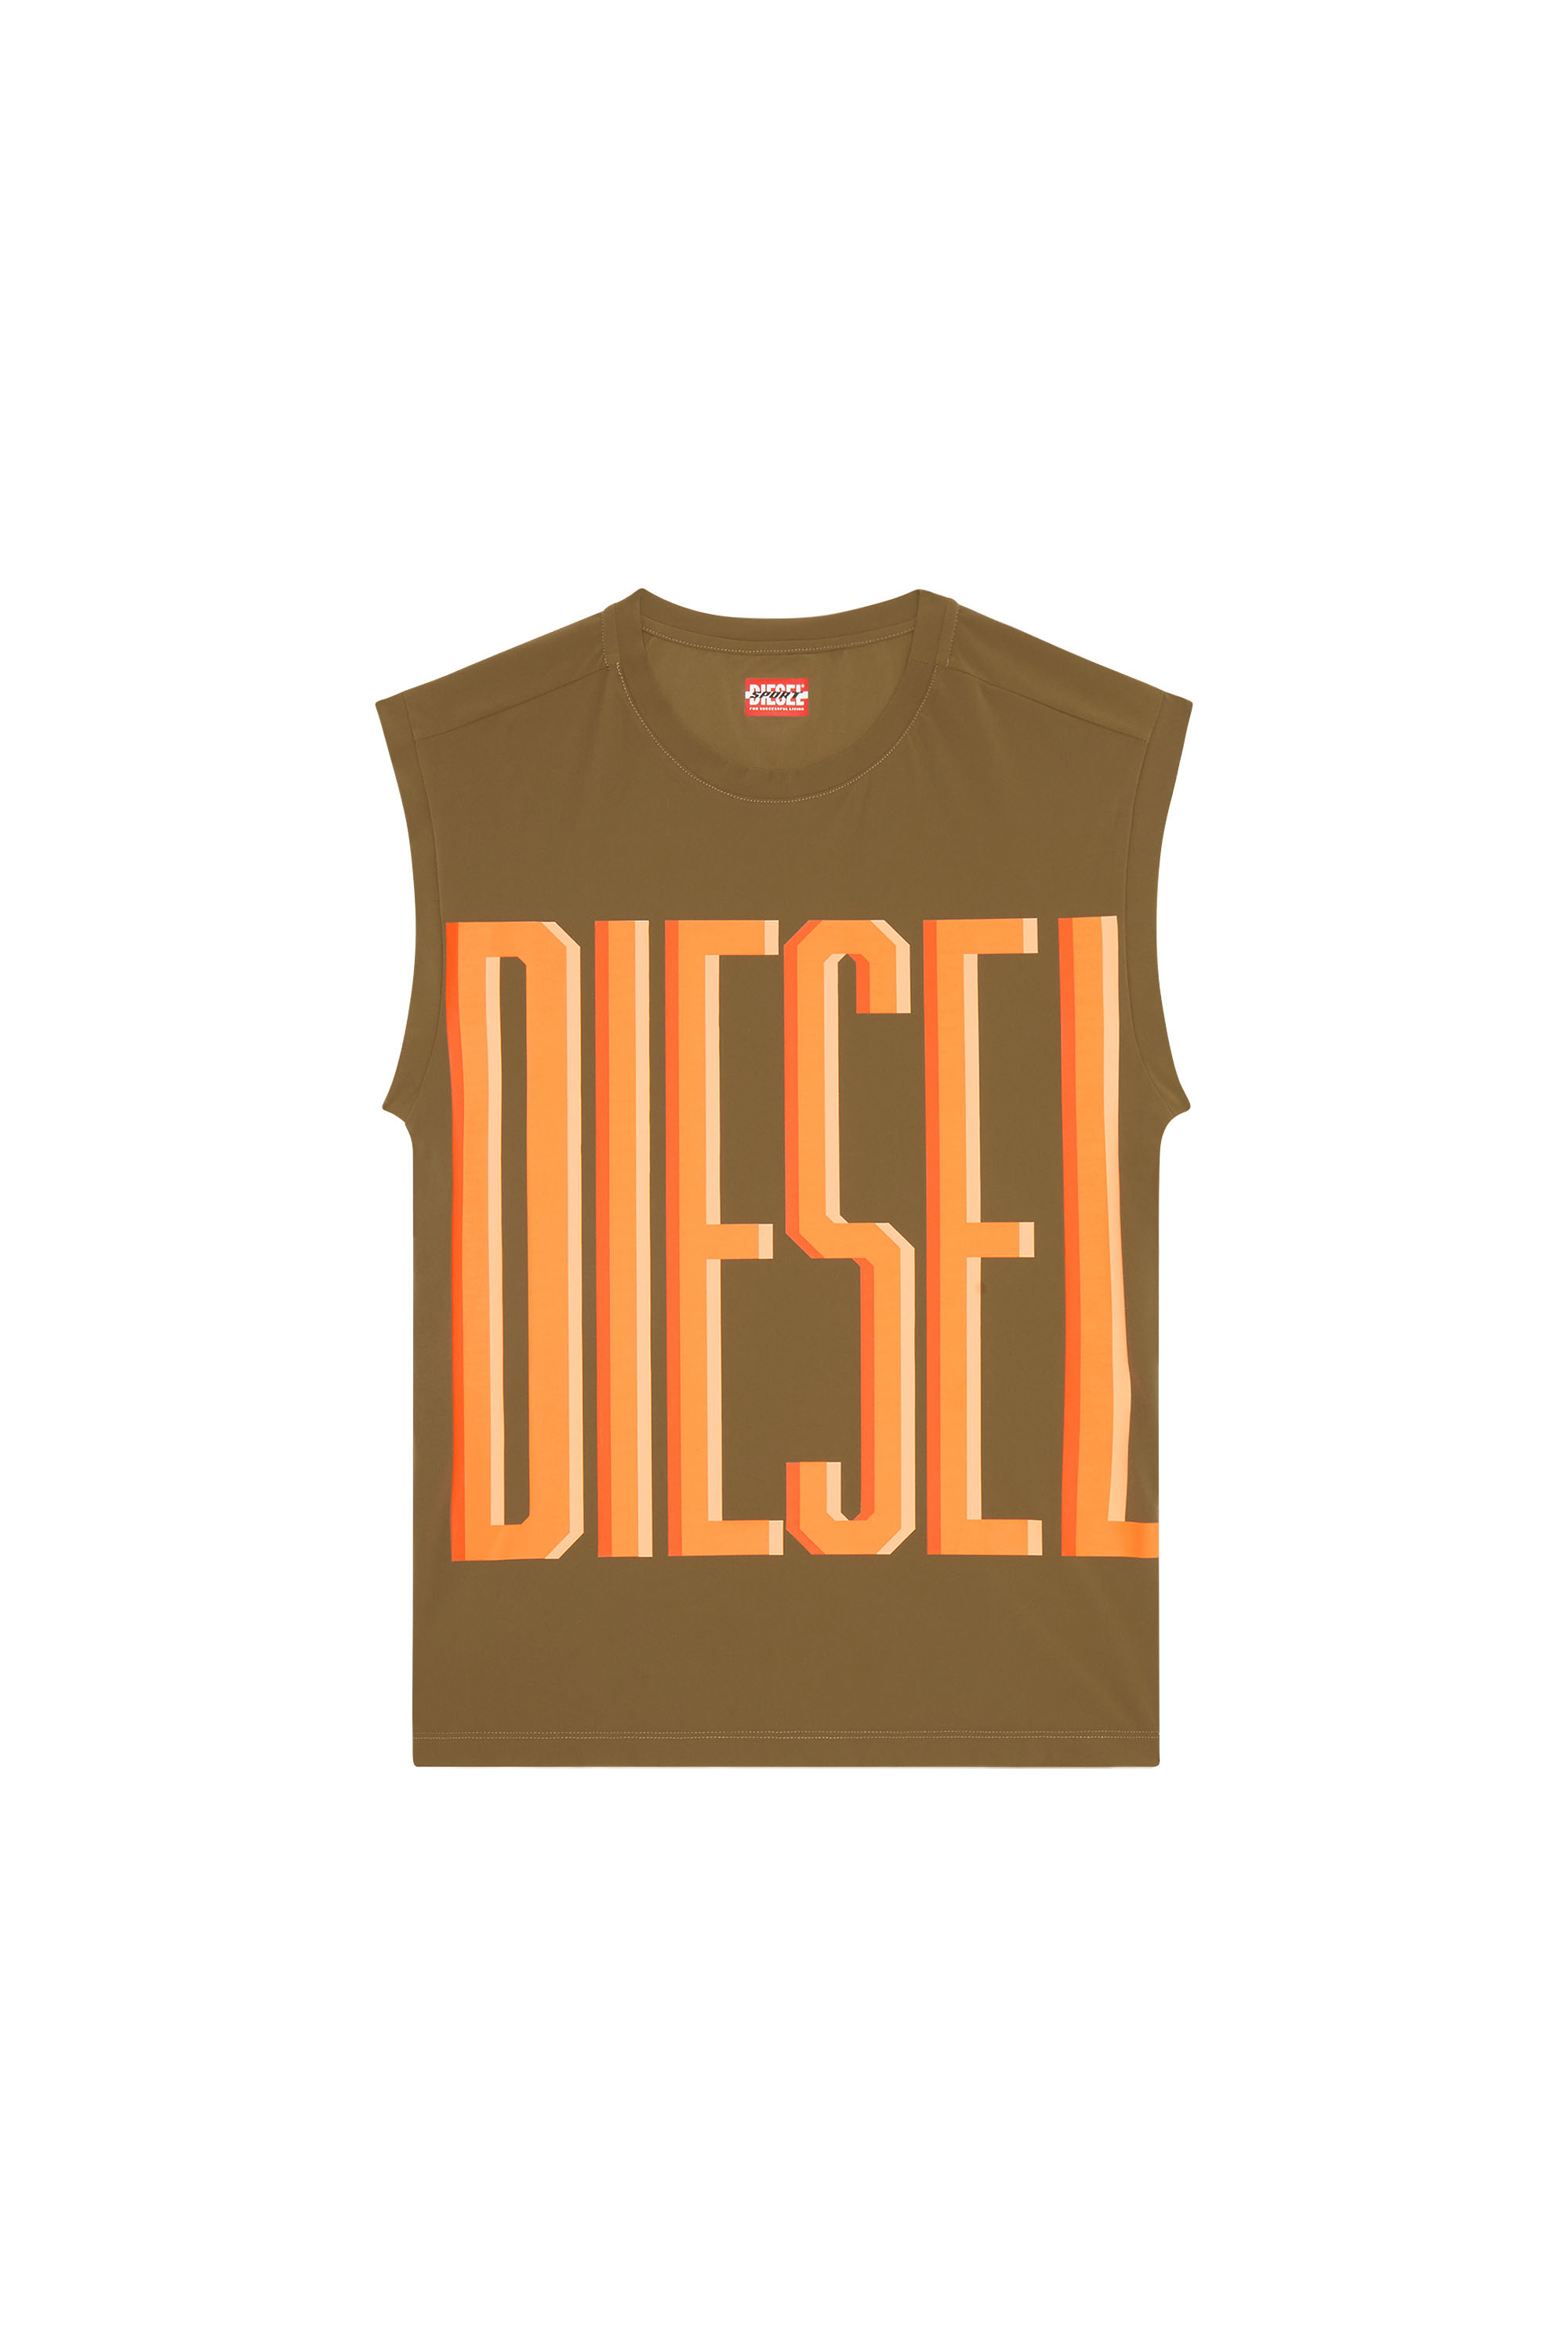 Diesel - AMST-RIDGE-WT40, Brown - Image 1